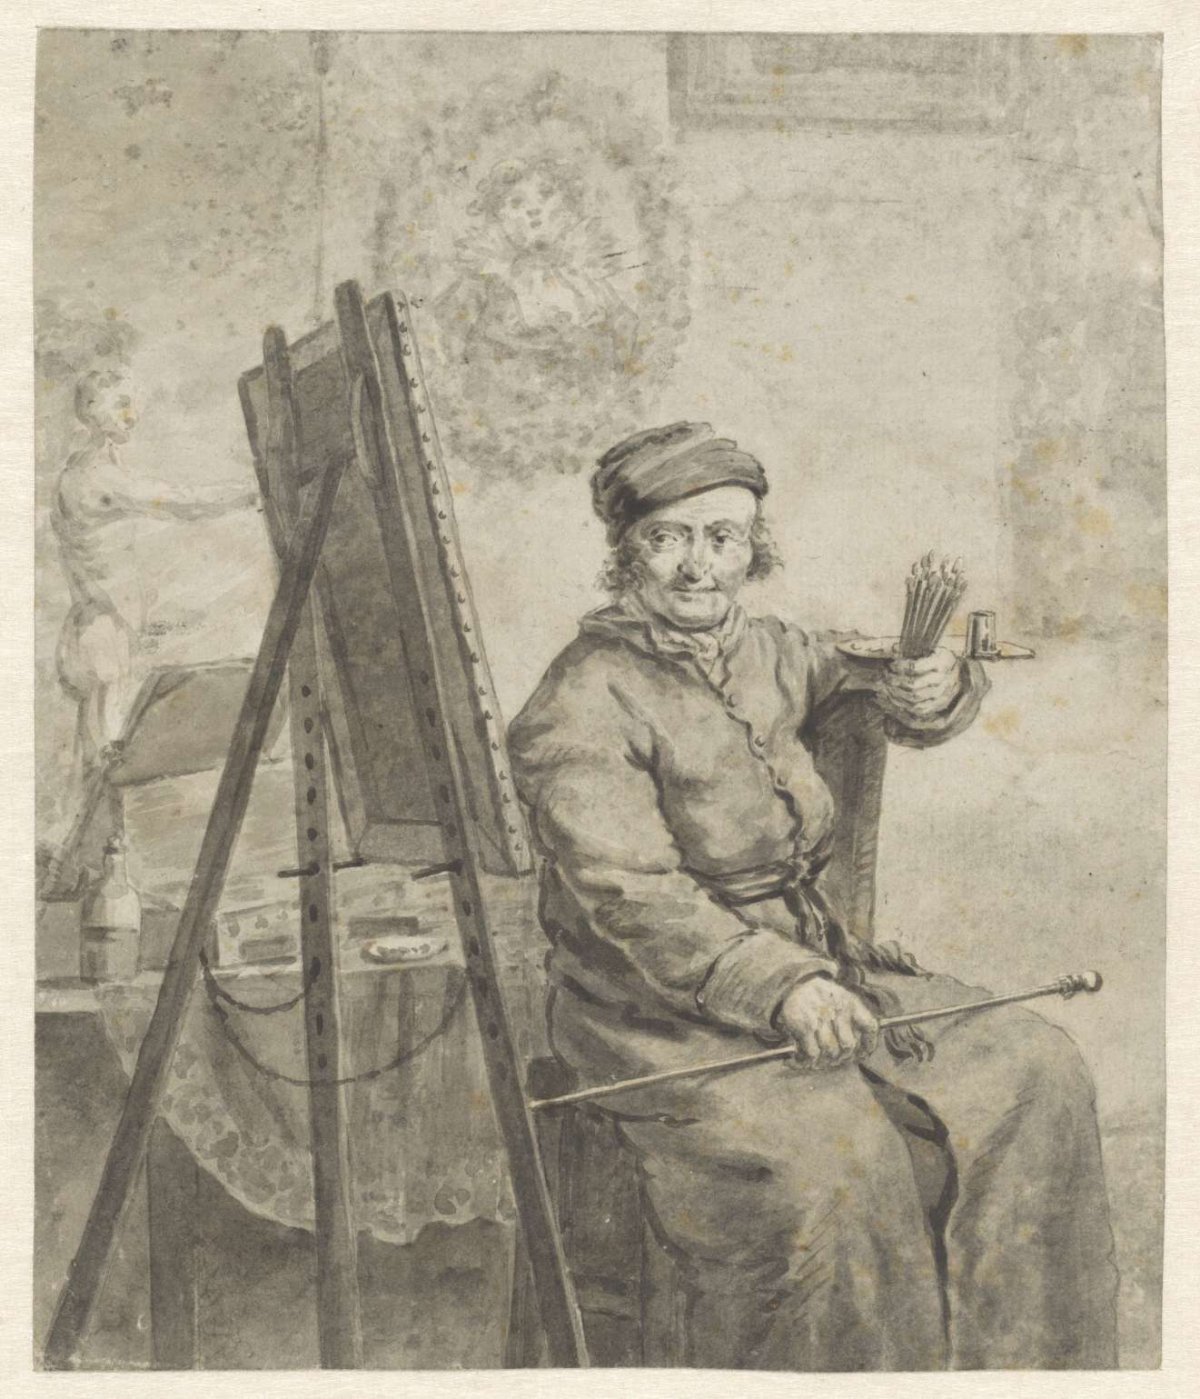 Self-portrait behind the easel, Abraham van Strij (I), 1763 - 1826